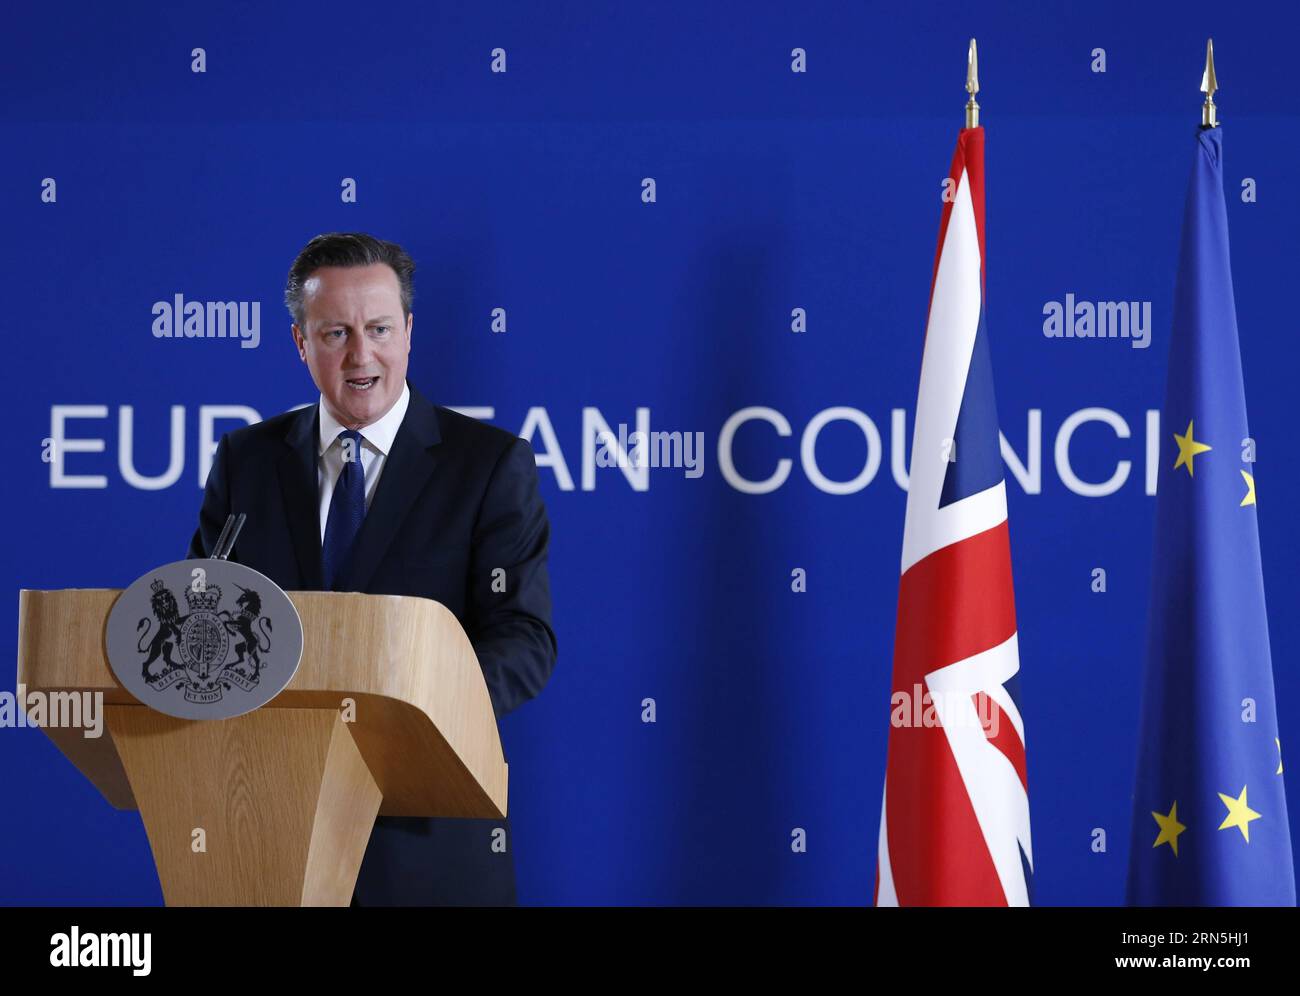 (150626) -- BRUXELLES, le 26 juin 2015 -- le Premier ministre britannique David Cameron prend la parole lors d'une conférence de presse après un sommet de l'UE à Bruxelles, Belgique, le 26 juin 2015. SOMMET BELGIQUE-UE YexPingfan PUBLICATIONxNOTxINxCHN 150626 Bruxelles juin 26 2015 le Premier ministre britannique David Cameron prend la parole lors d'une conférence de presse après le sommet de l'UE à Bruxelles Belgique juin 26 2015 Belgique Sommet de l'UE YexPingfan PUBLICATIONxNOTxINxCHN Banque D'Images